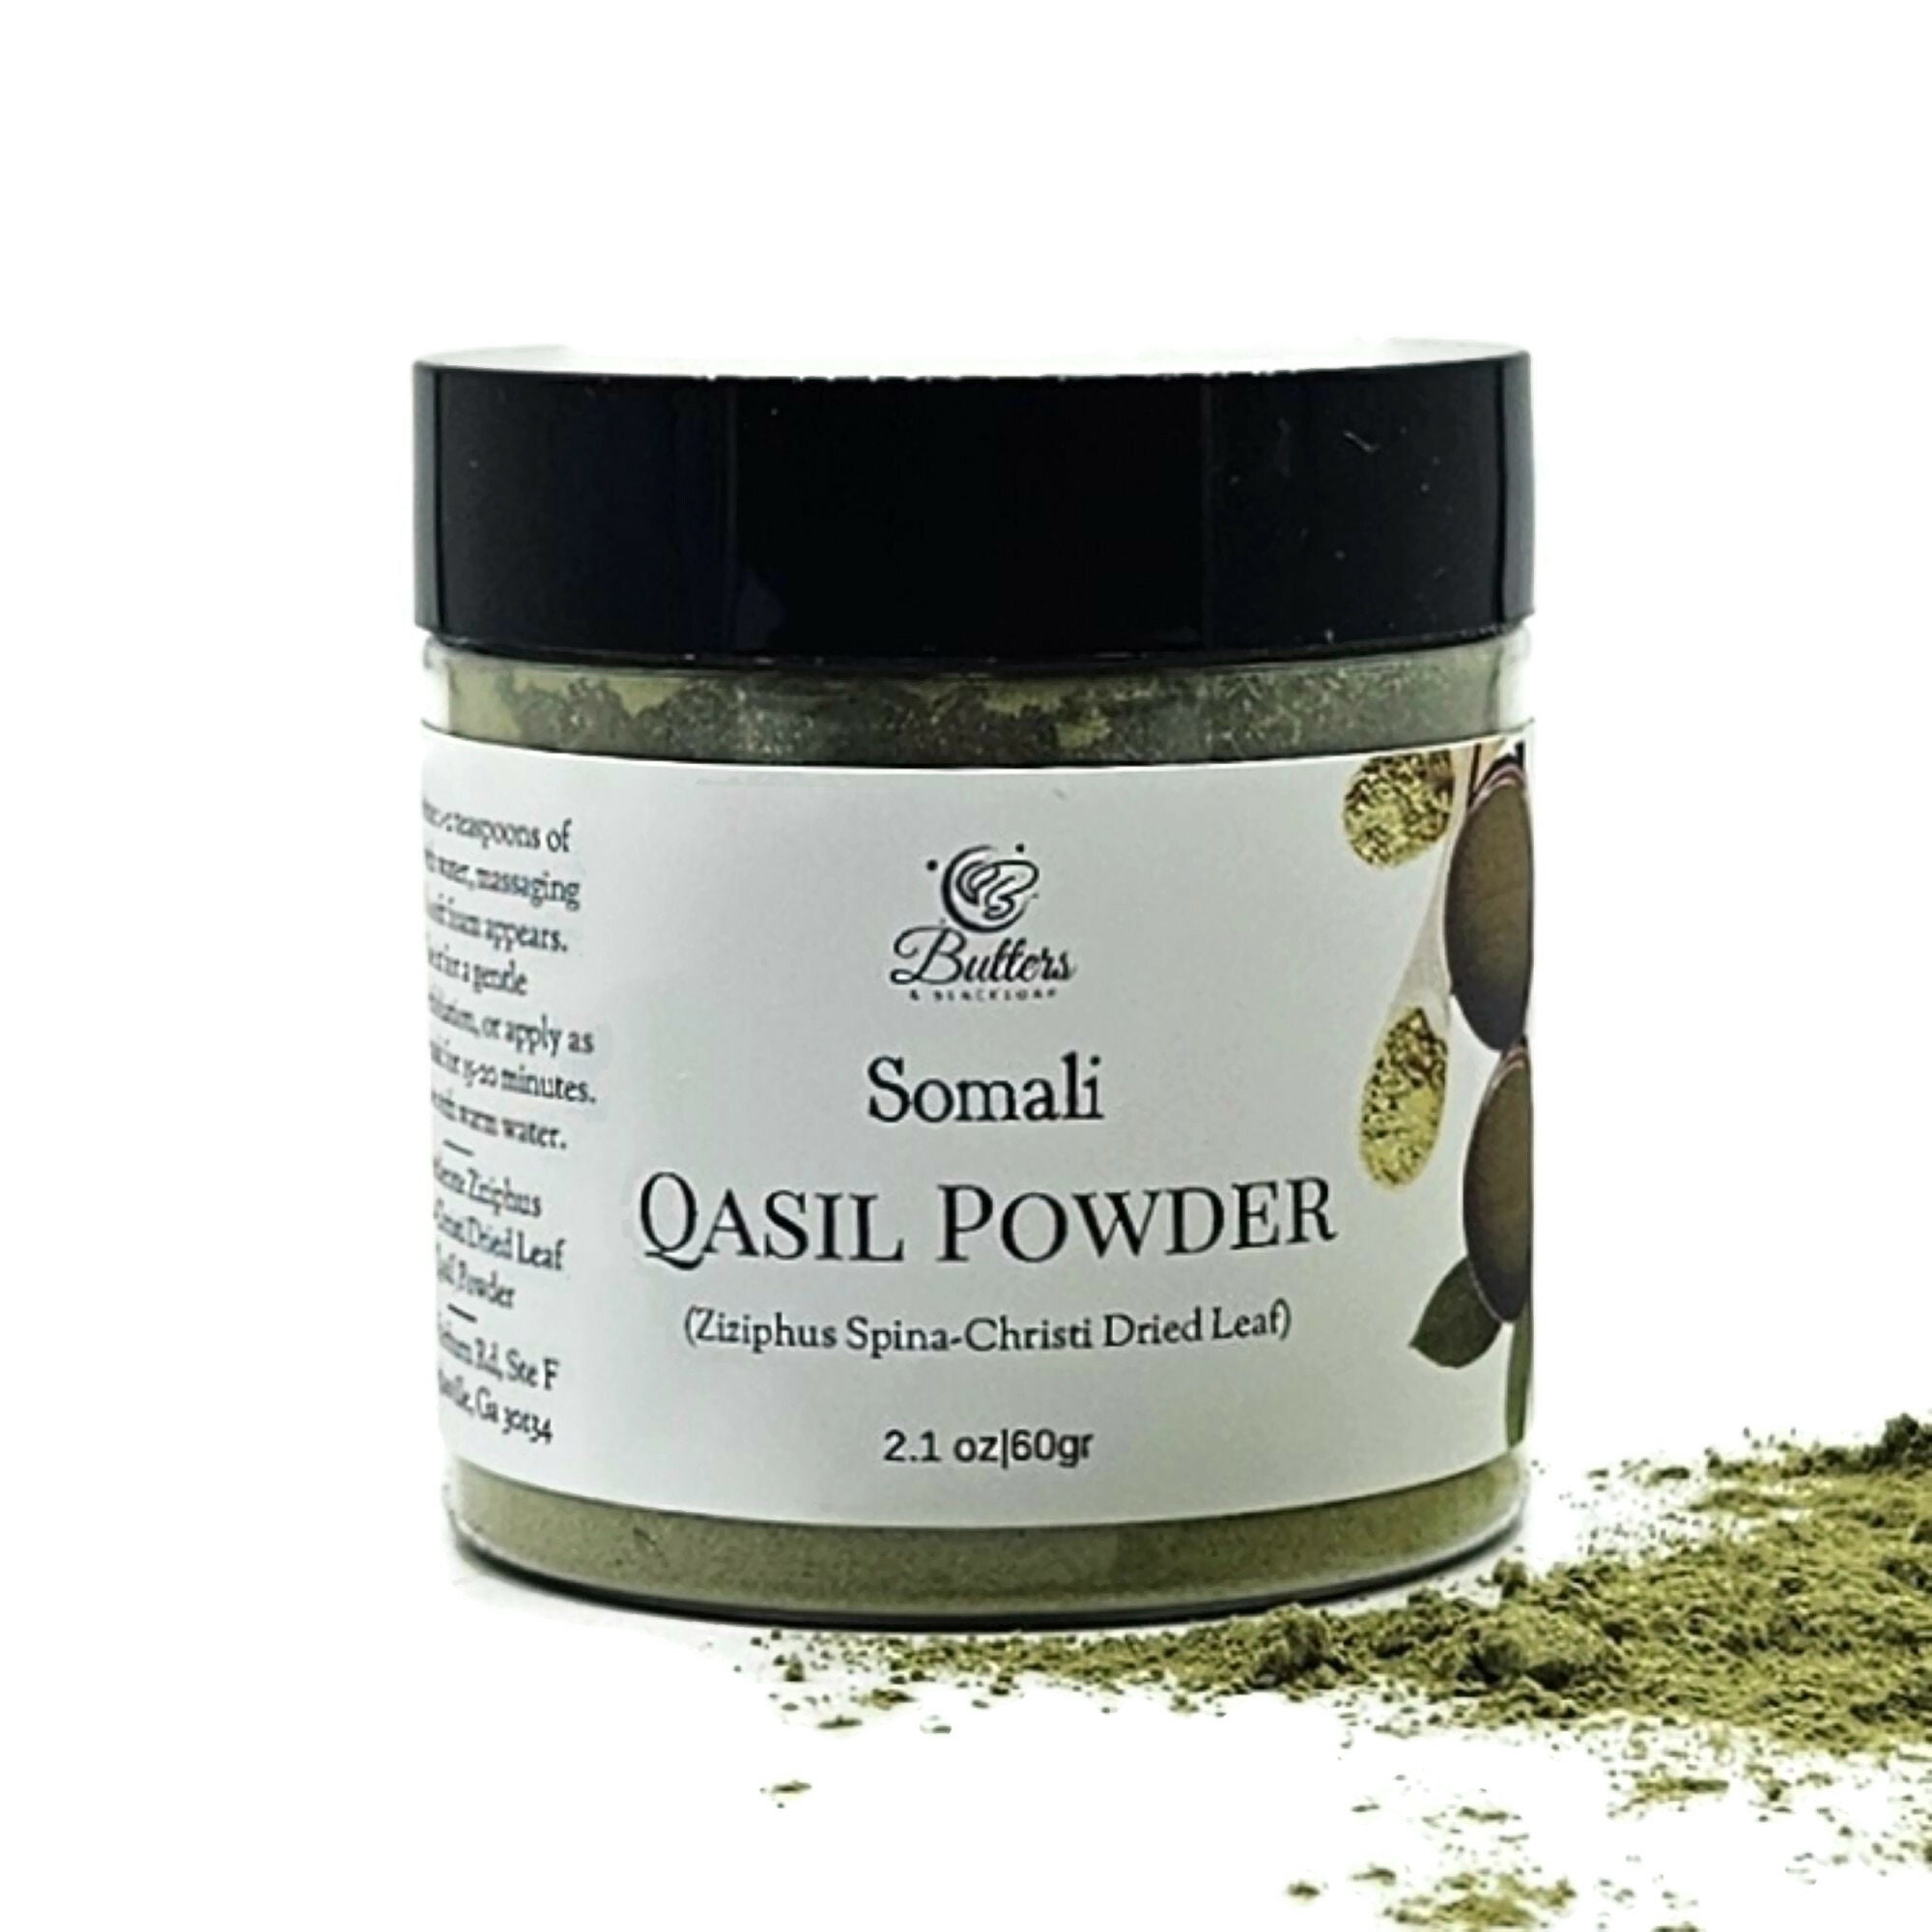 Qasil Facial Mask Powder Organic Mini Jar (4oz) – Monsun Beauty